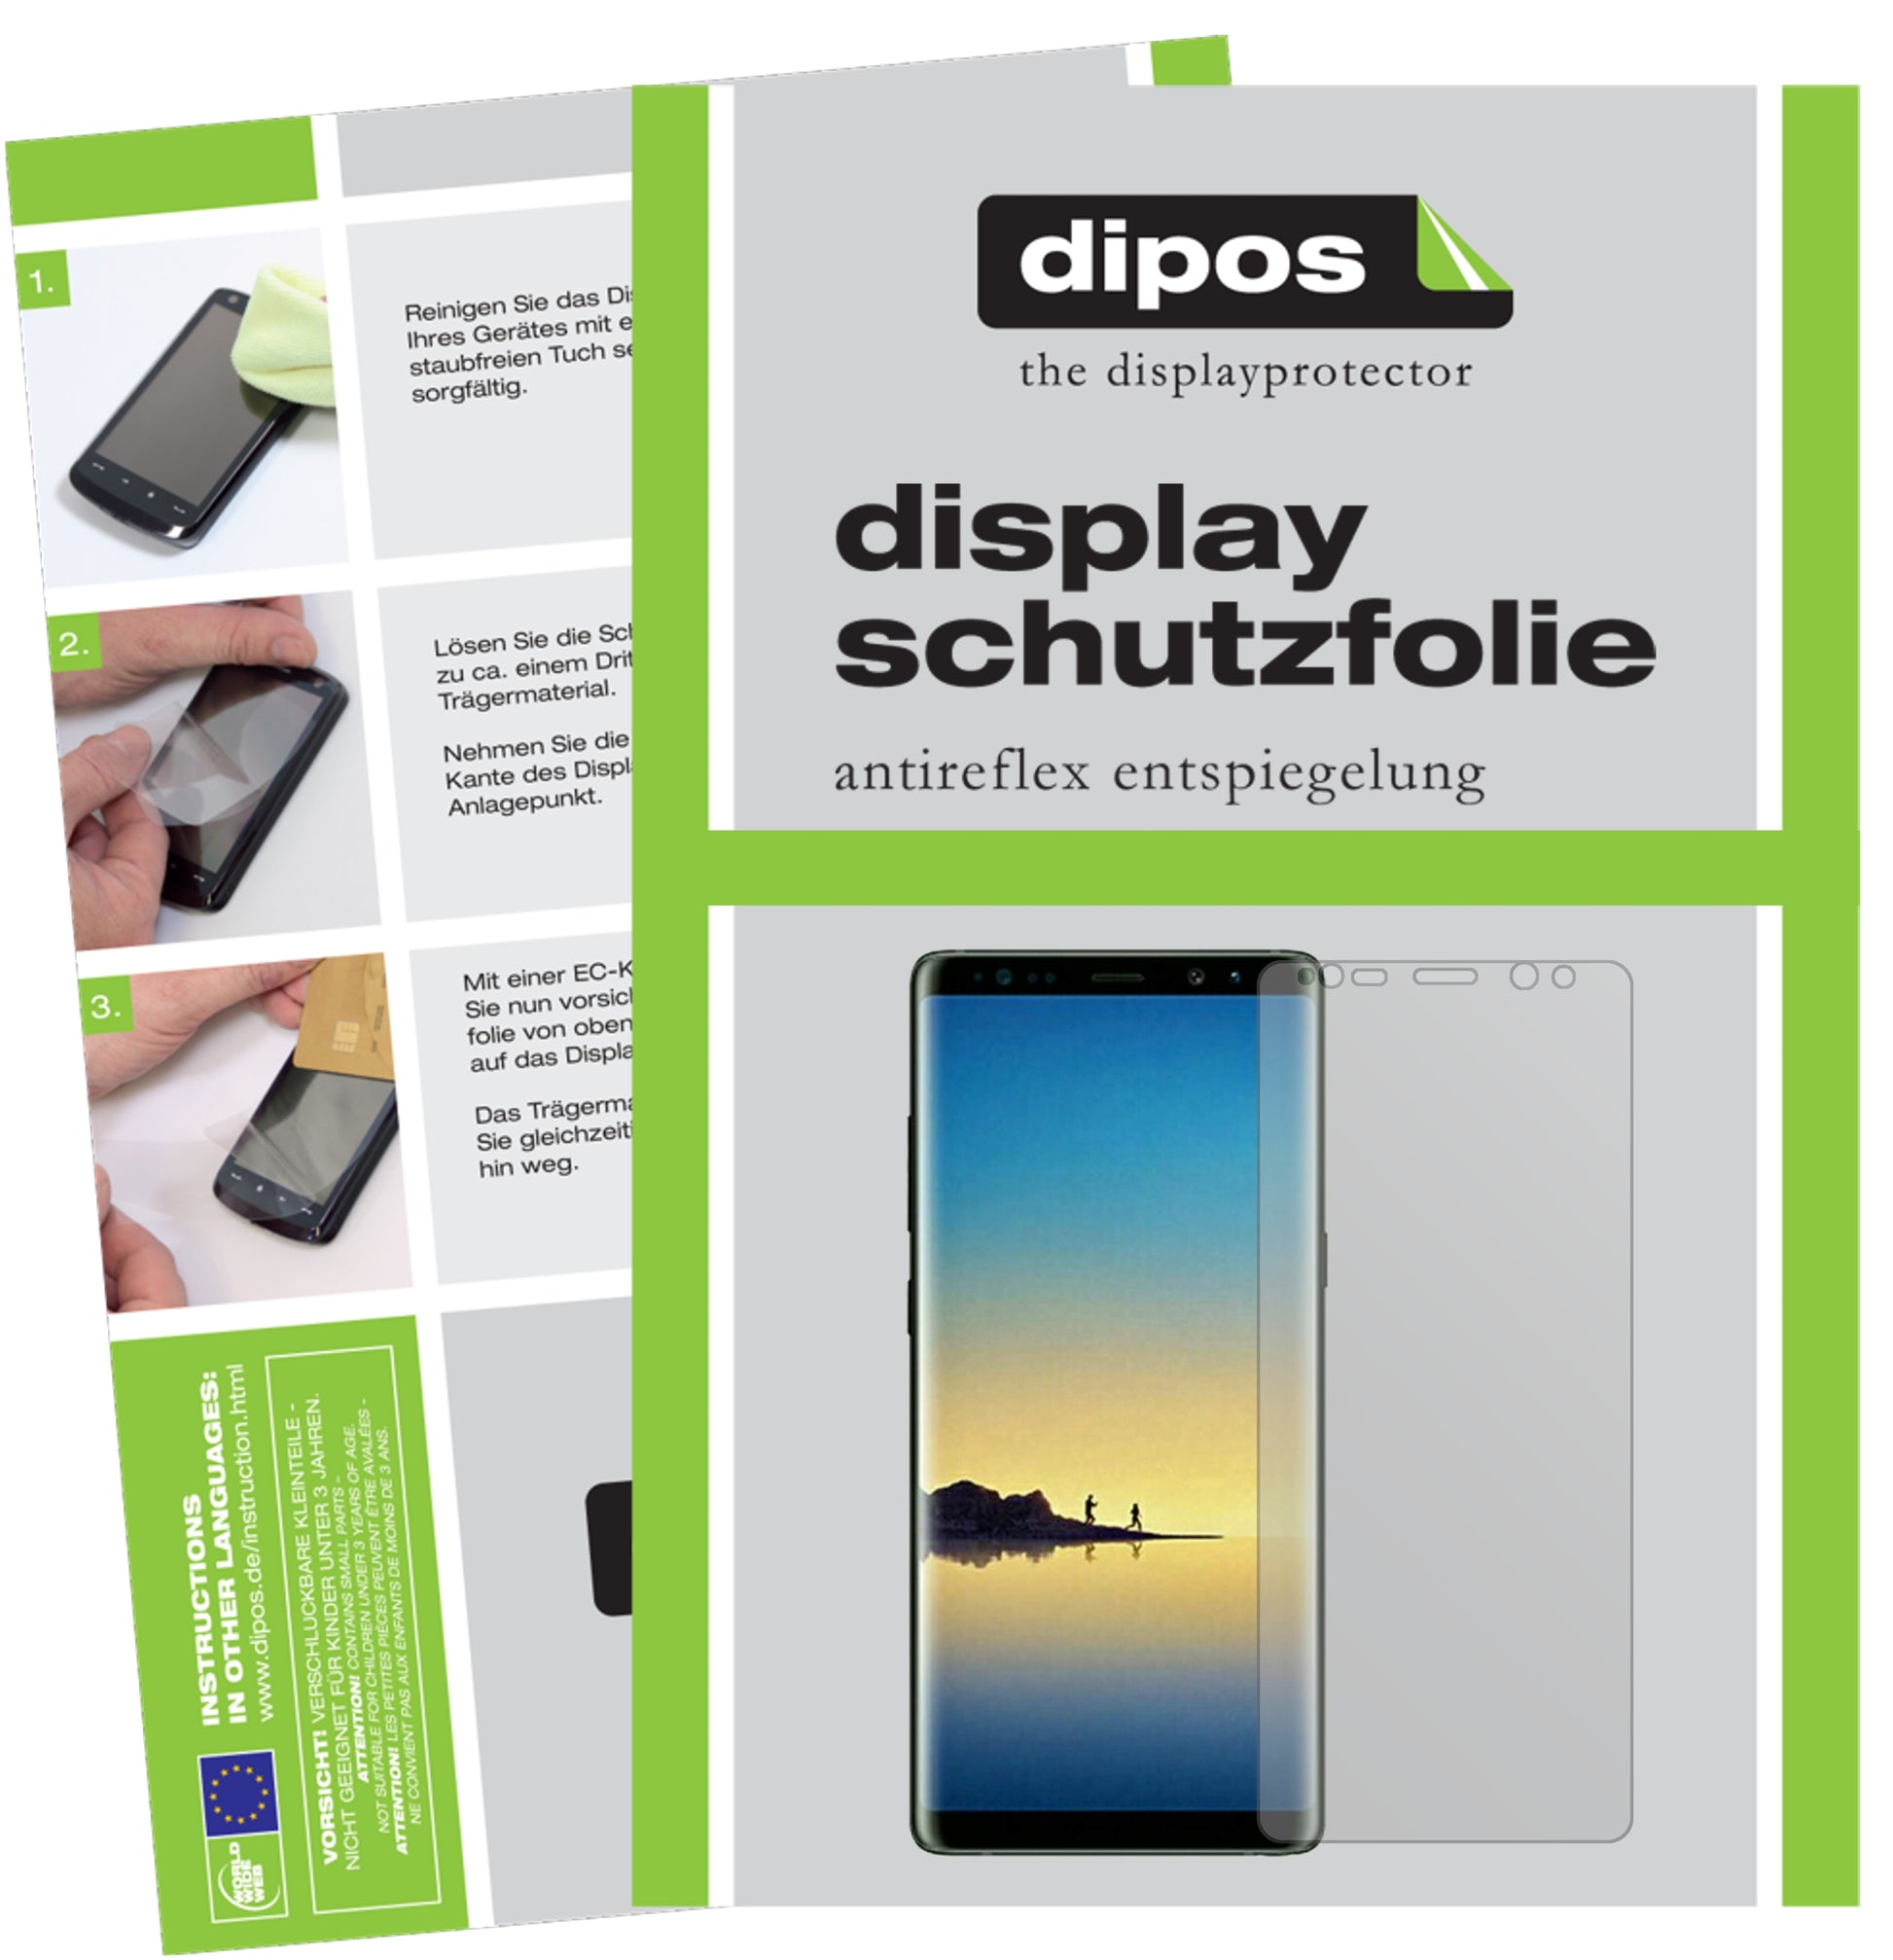 Mattes Panzerglas: Entspiegelte, dünne Folie, Fingerabdruckresistenz und Bildschirmschutz für Samsung-Galaxy Note 8